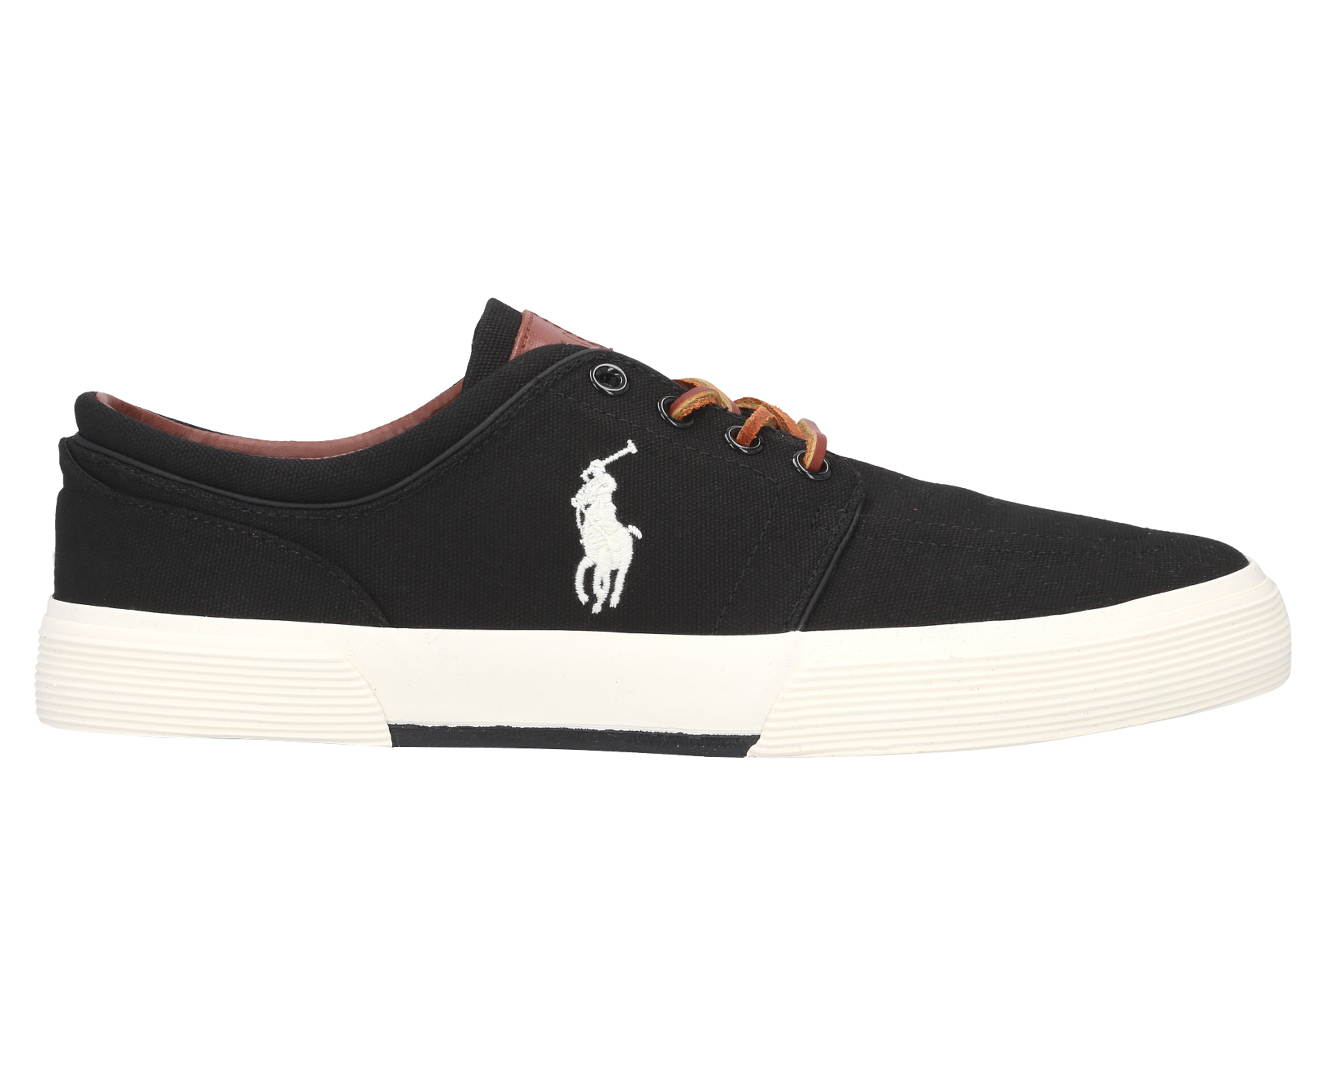 Polo Ralph Lauren Men's Faxon Low Sneakers - Black | Catch.com.au